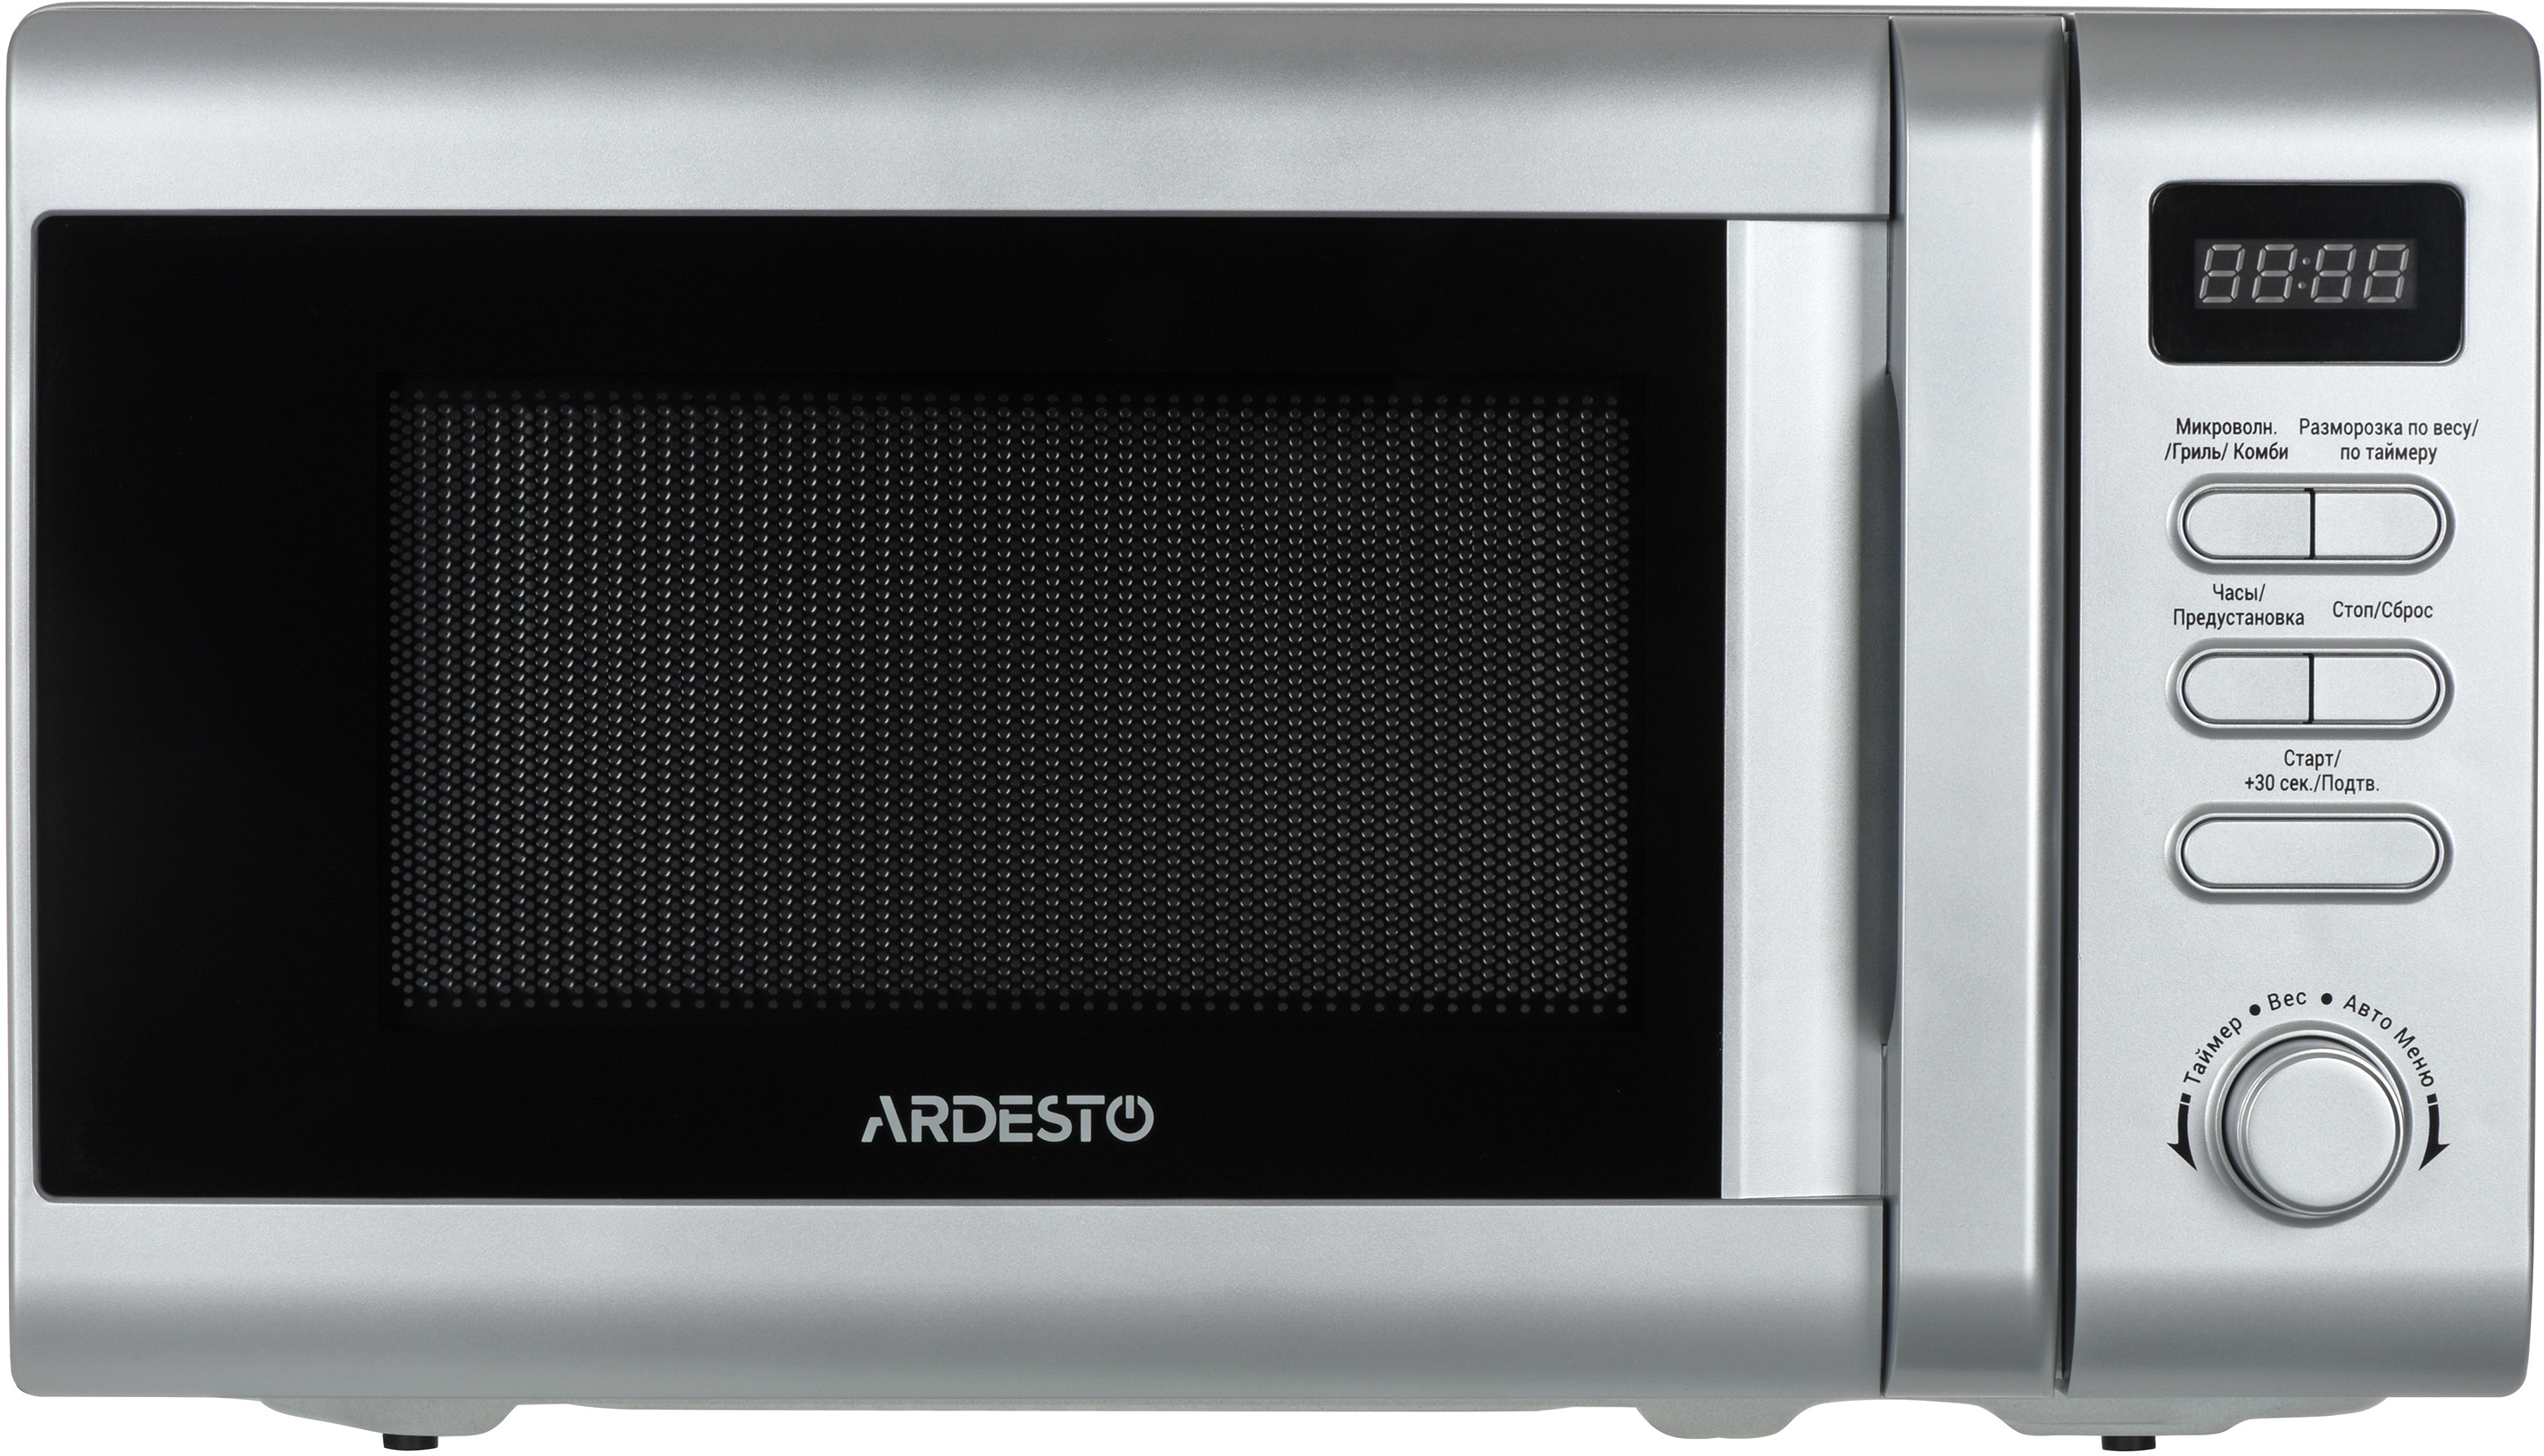 Микроволновая печь с грилем Ardesto MO-G730S цена 0 грн - фотография 2